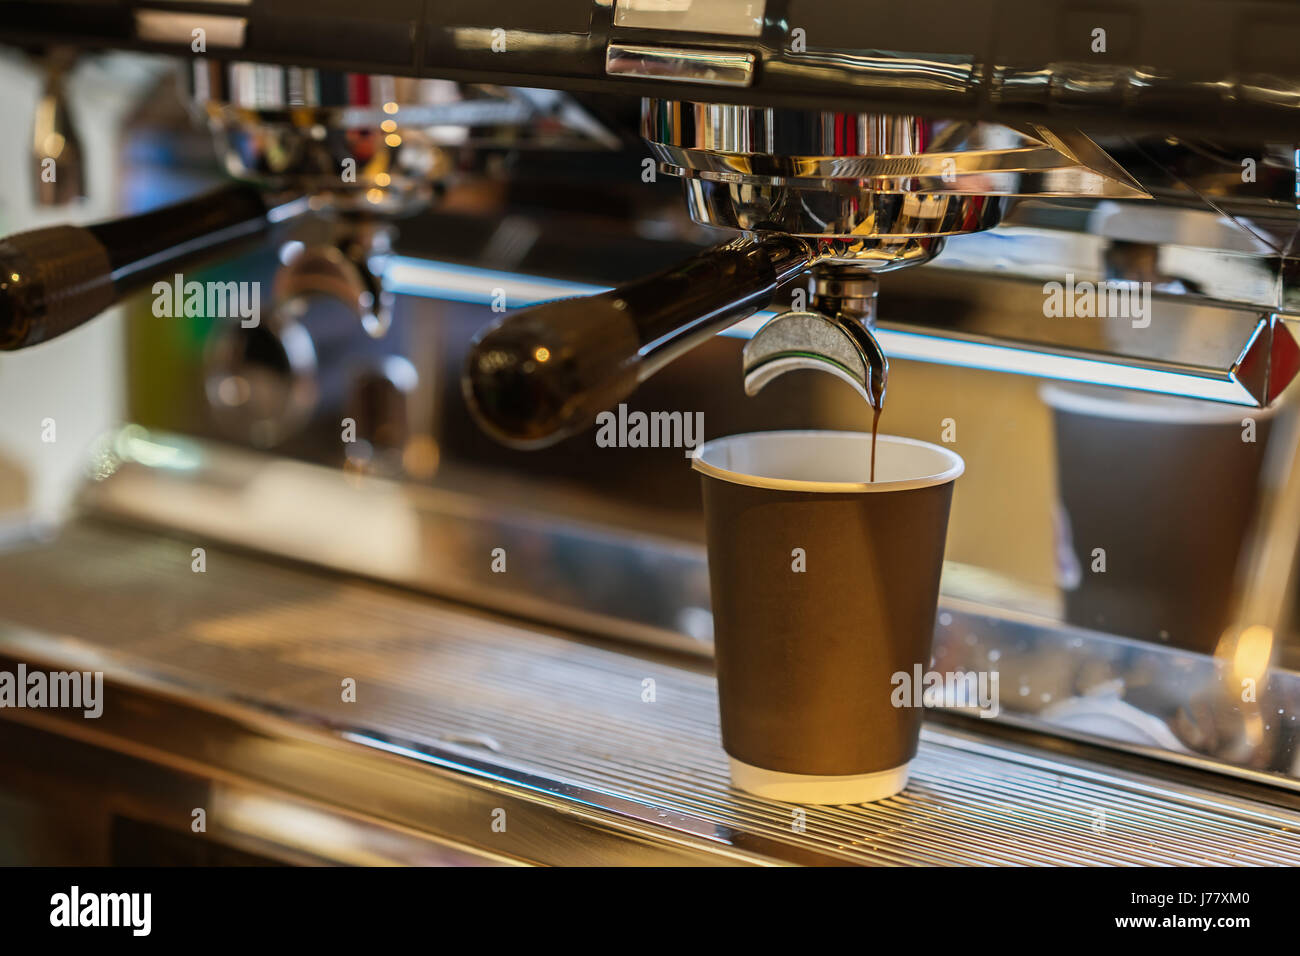 Close-up frischer Espresso gießt in Papierschale, italienische Espresso-Maschine. Kaffeekultur und professionelle Kaffeemaschine, Service, catering-Konzepte Stockfoto